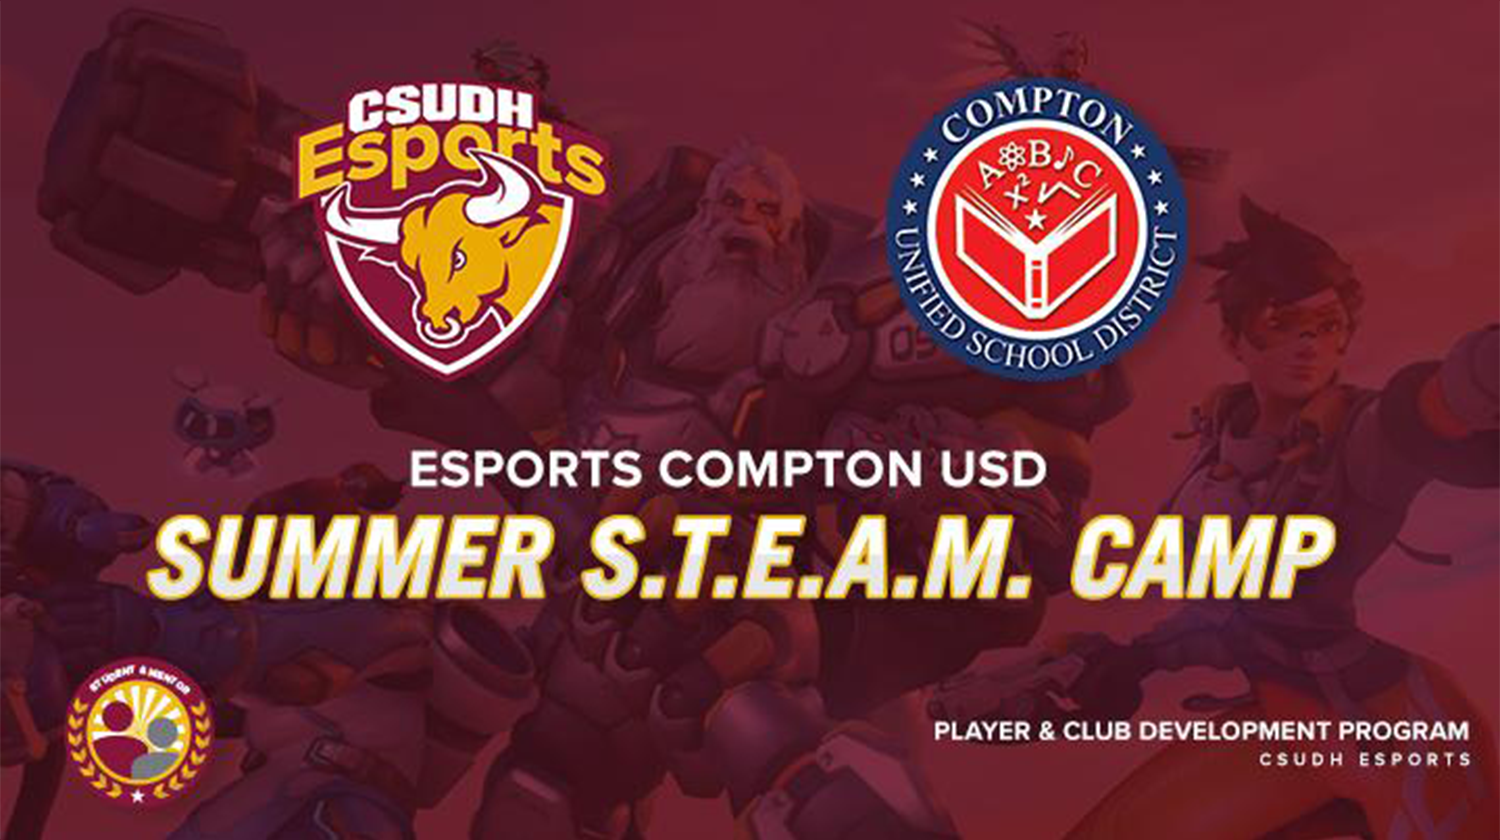 Esports Summer S.T.E.A.M. Camp.